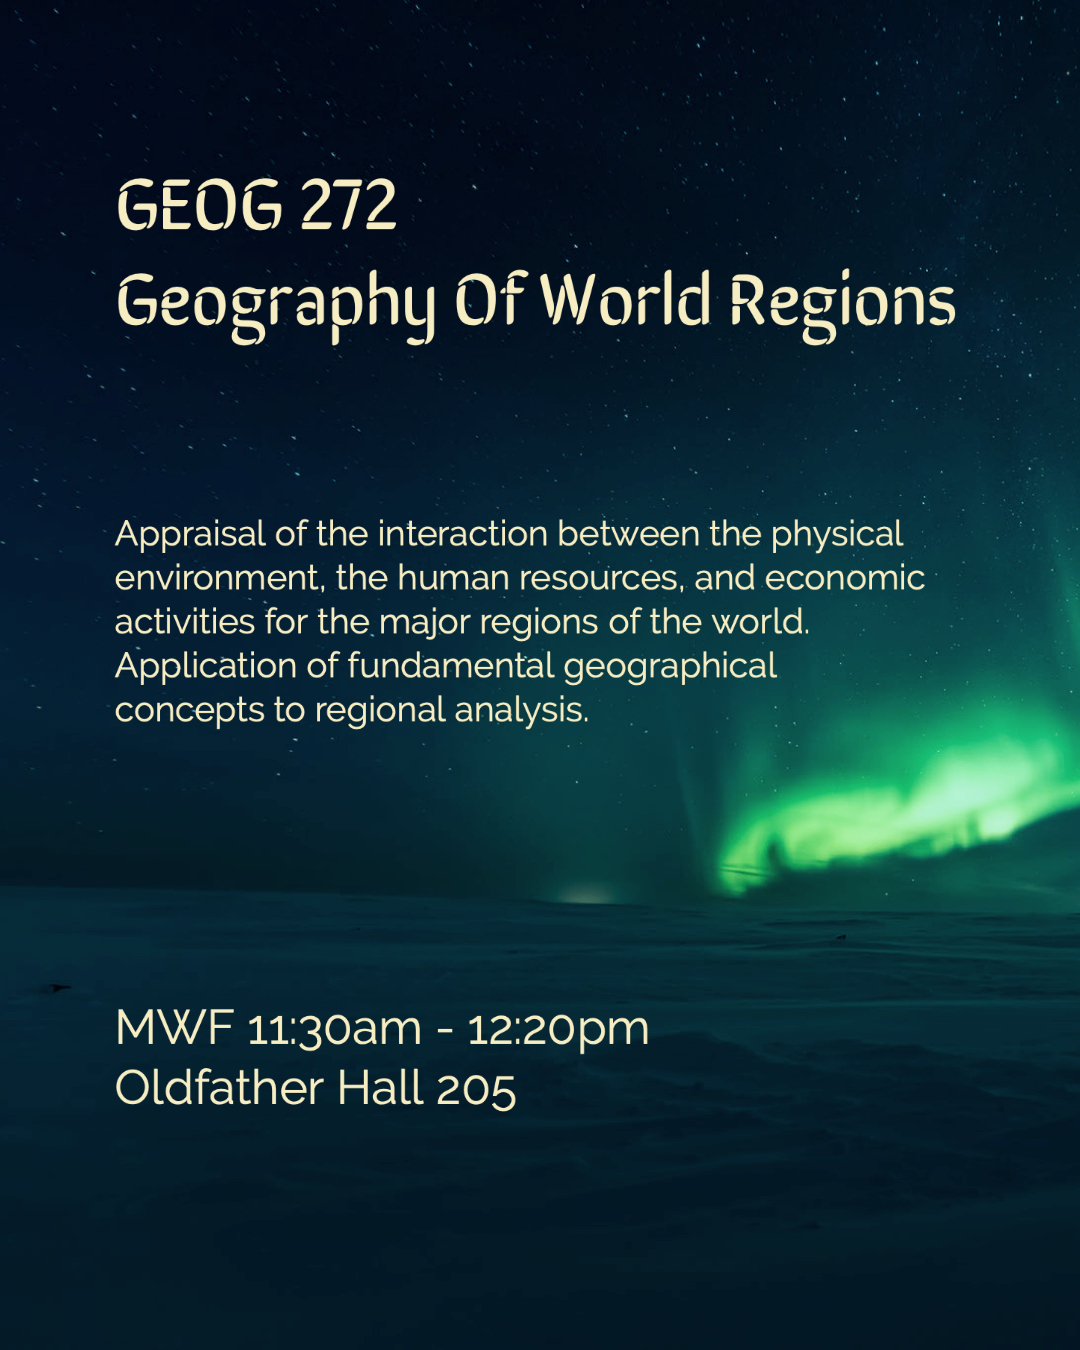 GEOG 272: Geography of World Regions